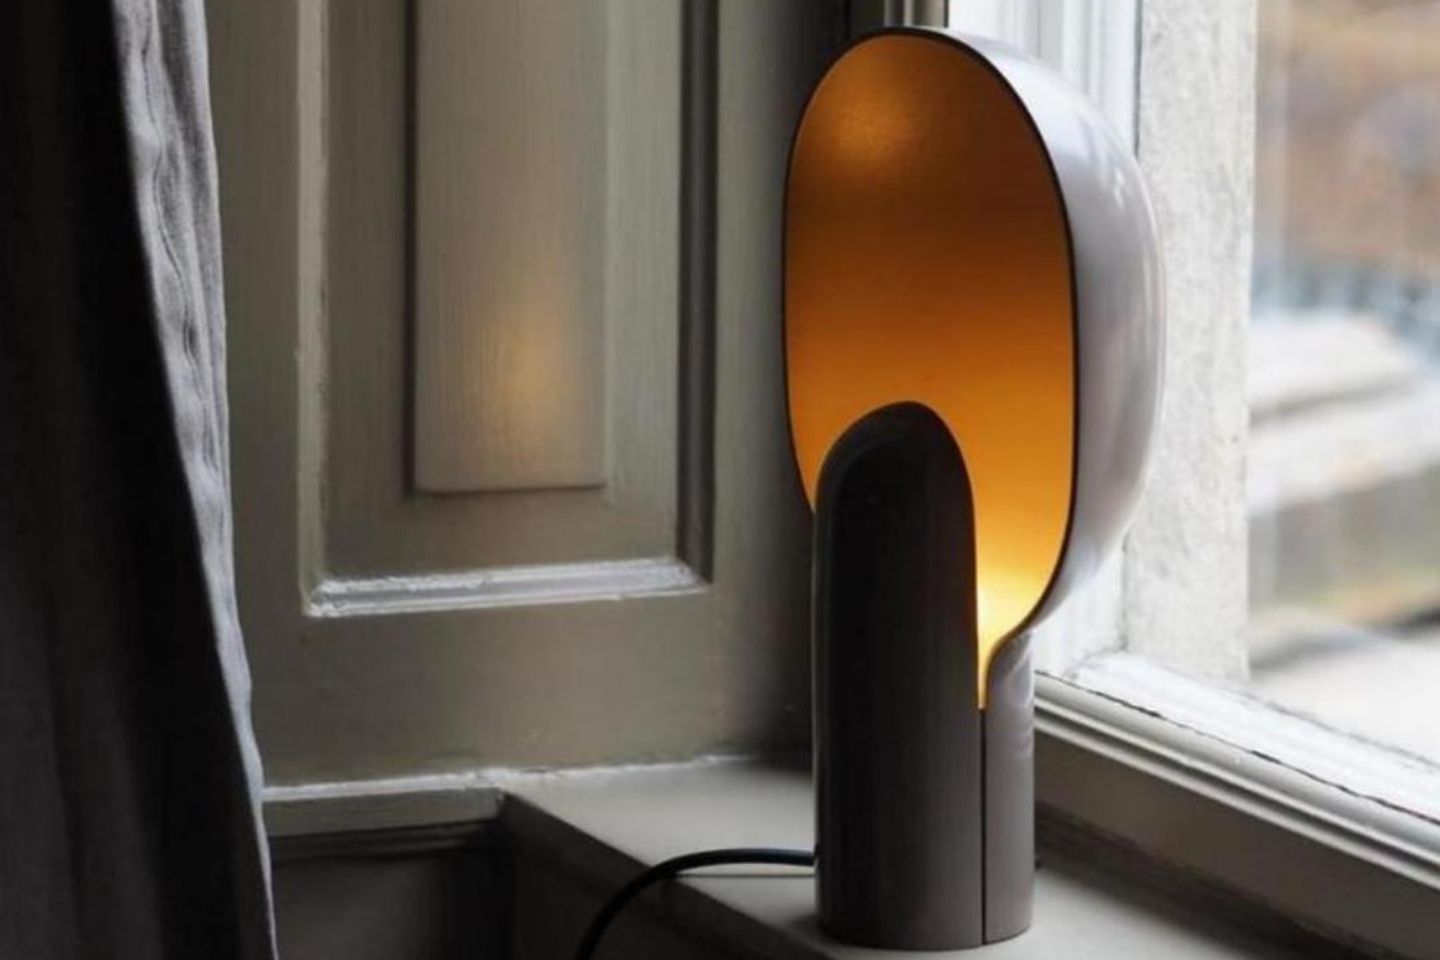 Tischleuchte "Ware Lamp" von New Works auf einem Fensterbrett